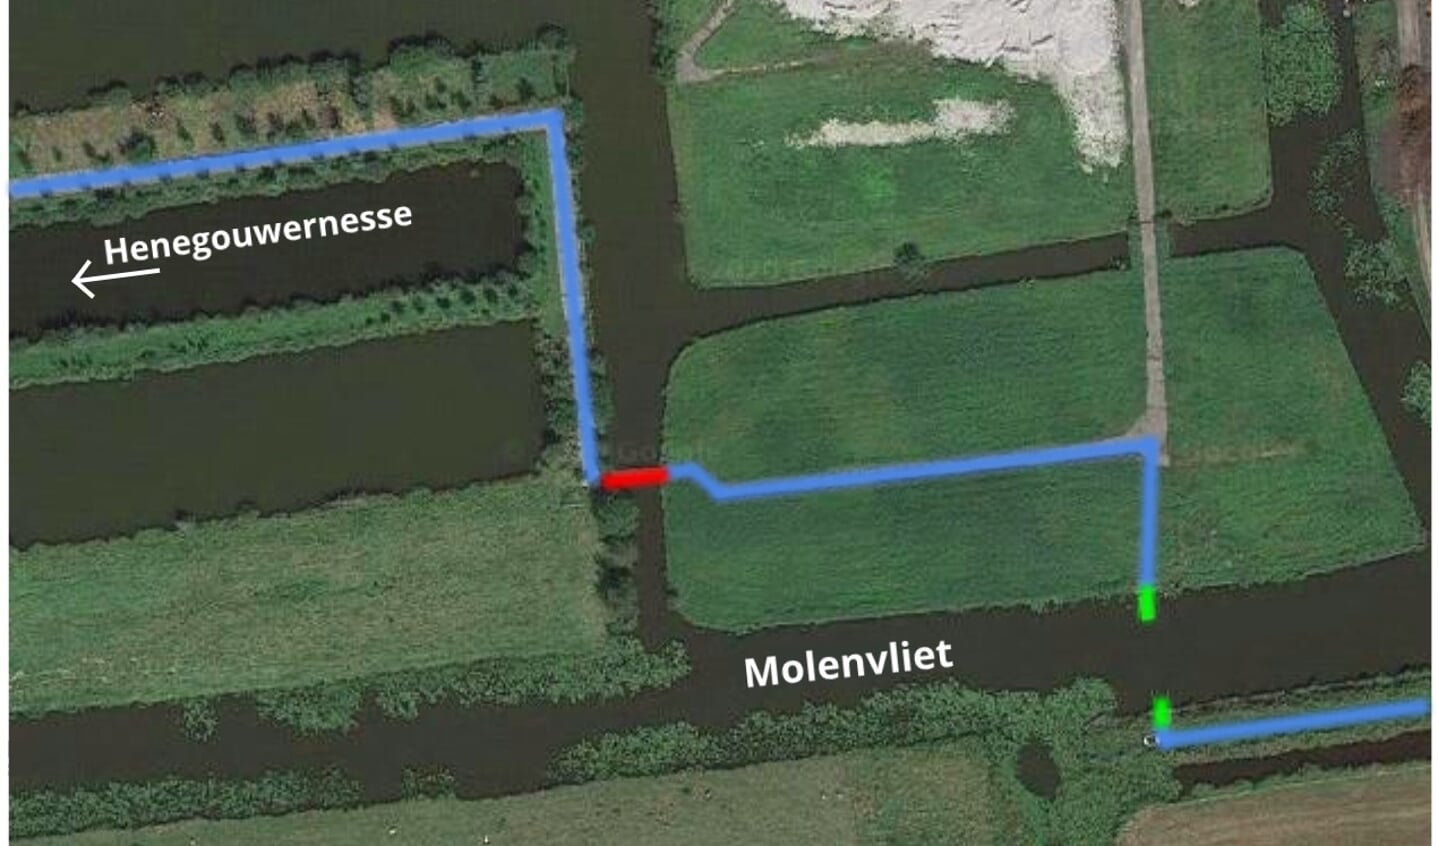 Het wandelpad (blauw), de vlotburg (rood) en het huidige trekpontje (groen). De nieuwe trekpont komt 30 meter ten zuiden van de vlotbrug.